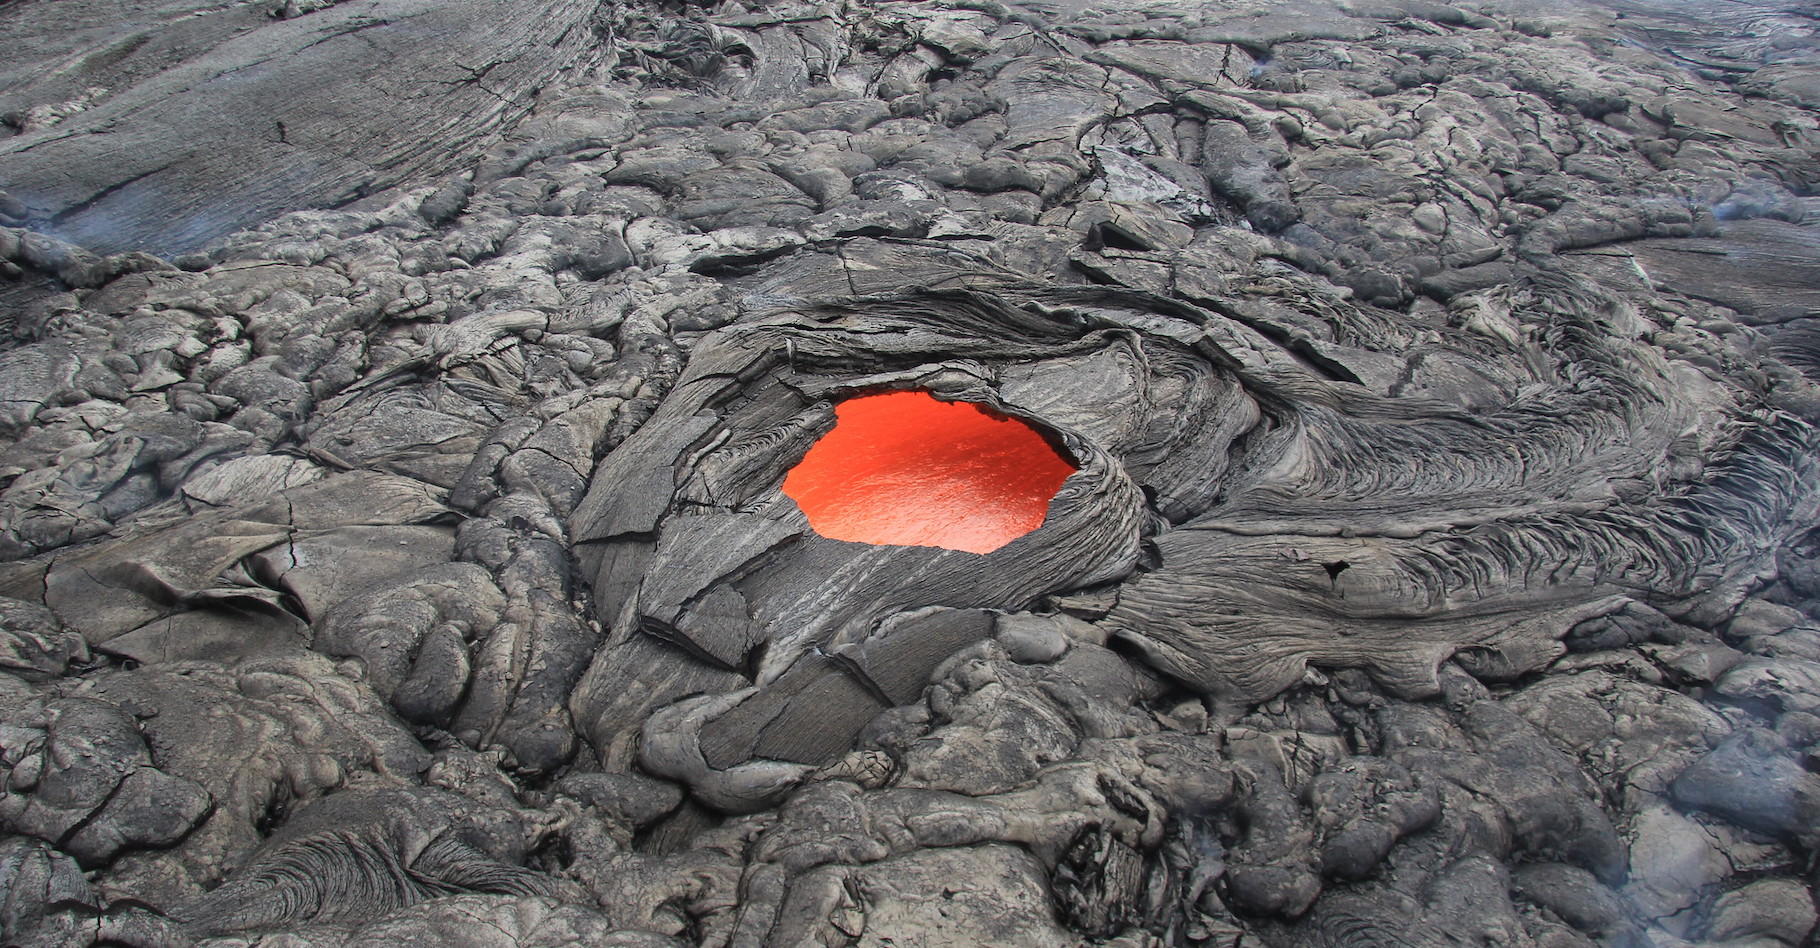 La lave apparaît rouge au-dessus d'une certaine température d'incandescence. © U.S. Geological Survey, Flickr, Domaine public